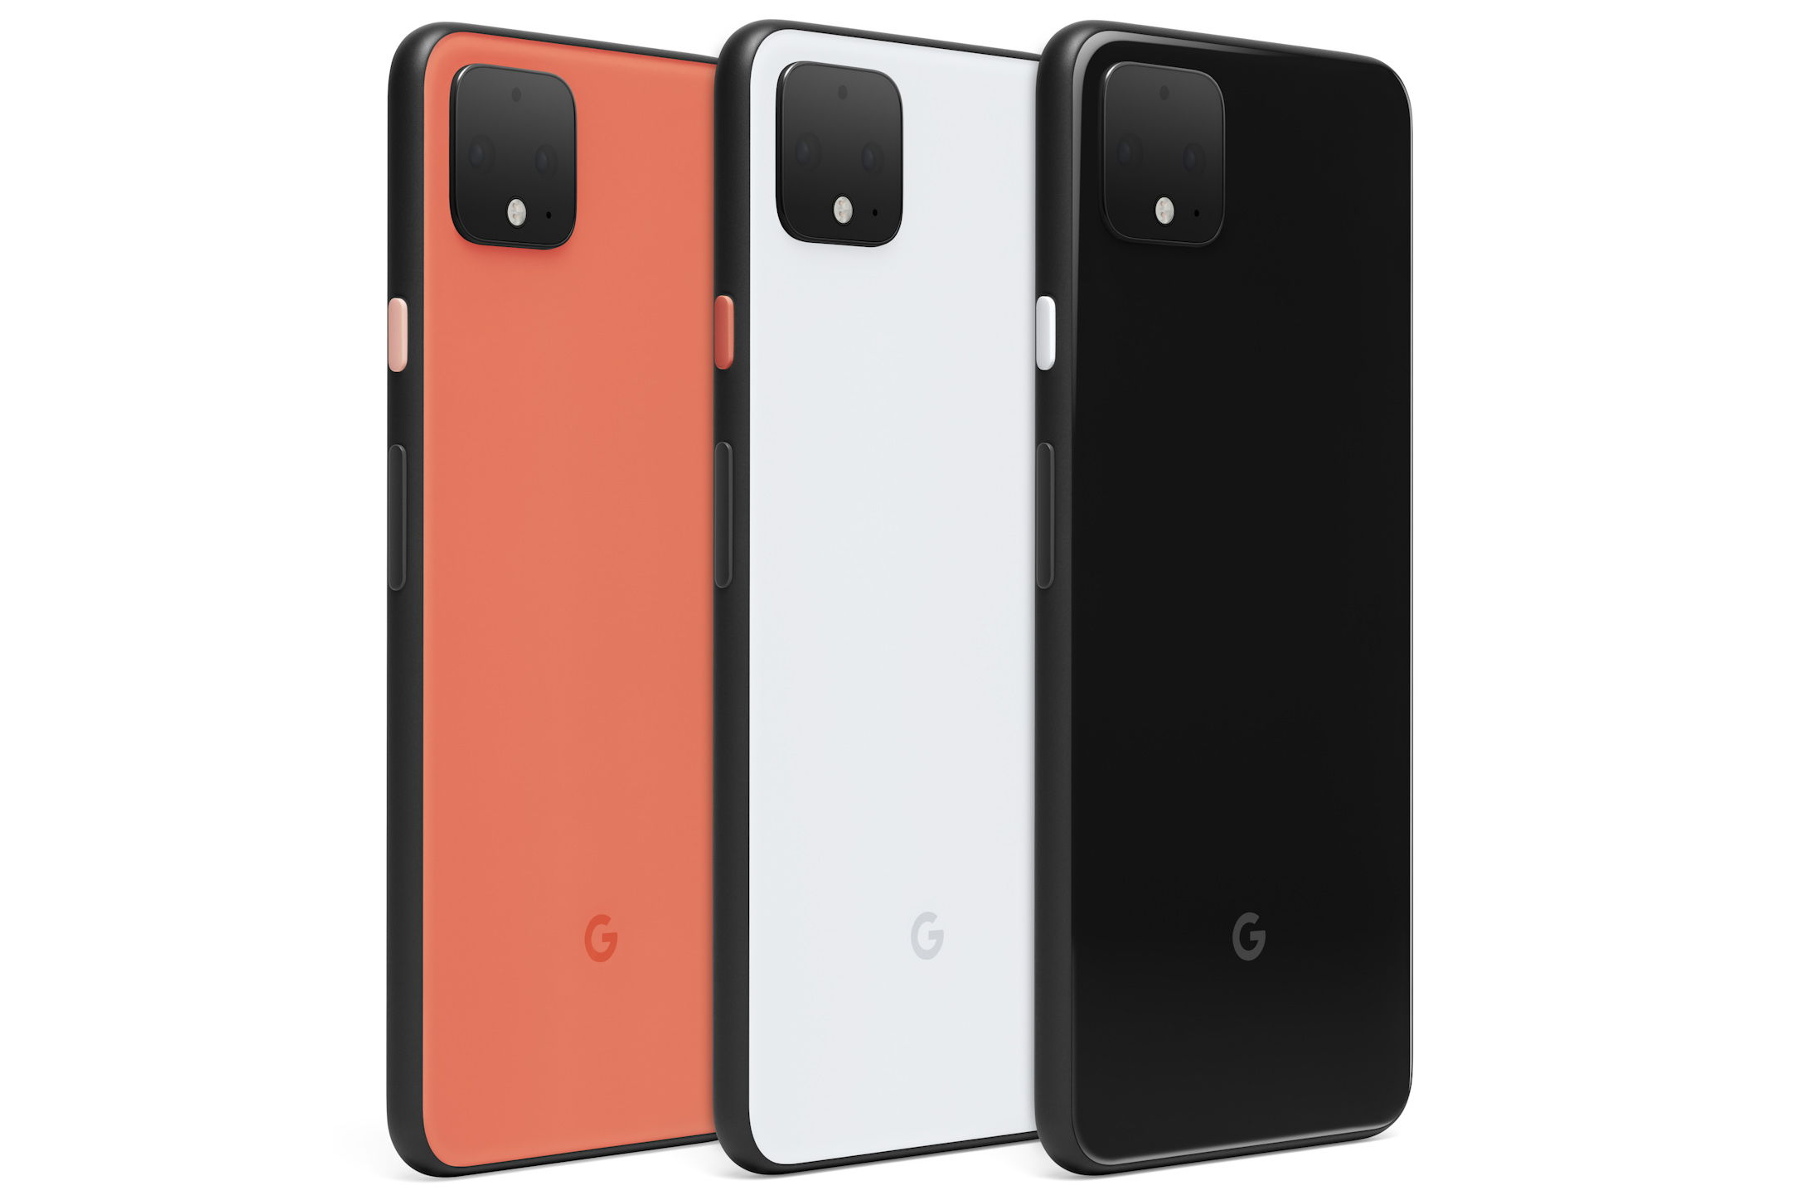 O Google Pixel desbloqueado 4 XL em "Oh So Orange" já está fora de estoque 1